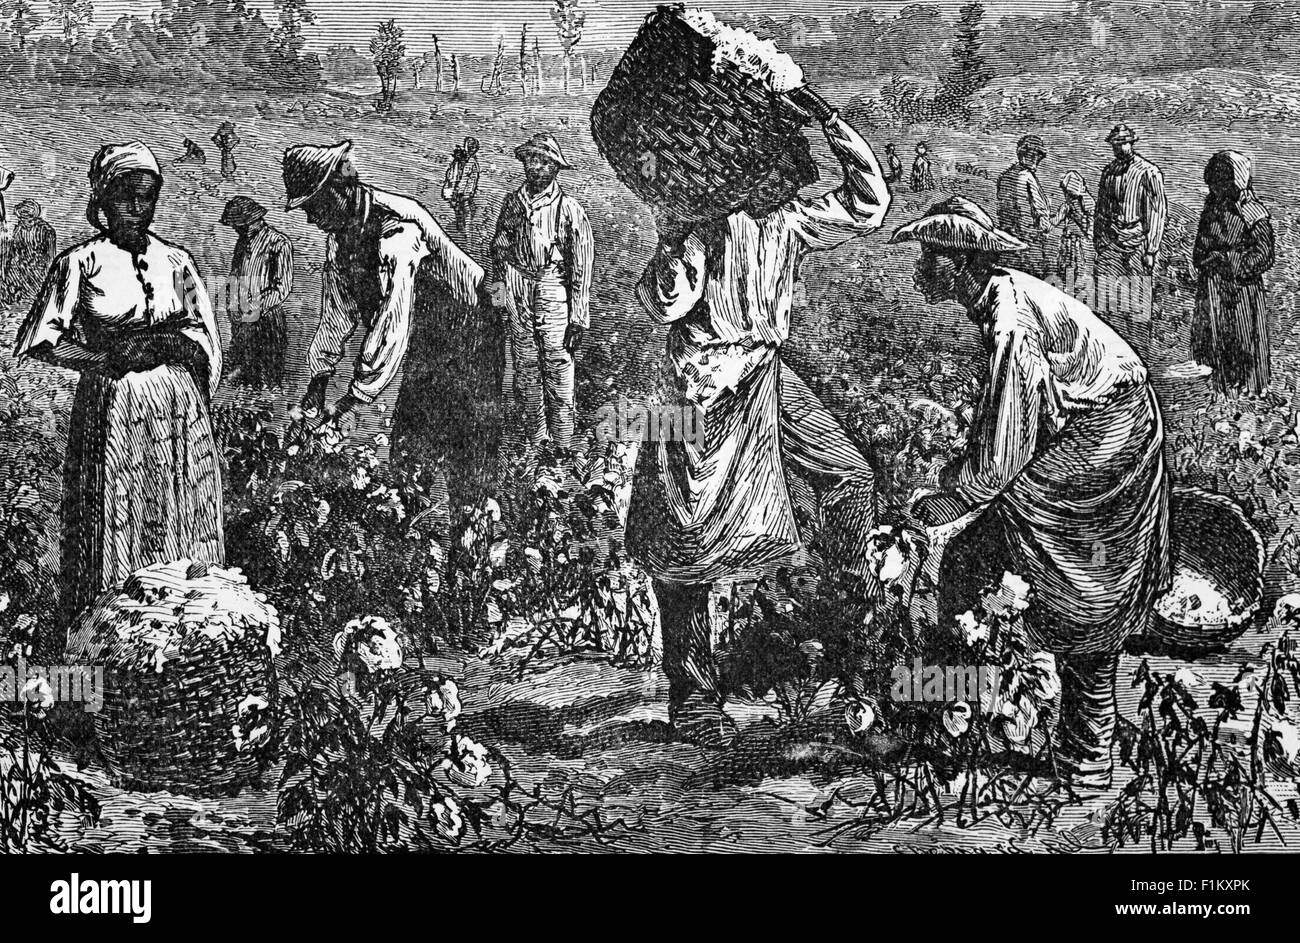 Eine Illustration aus dem späten 19. Jahrhundert, in der Baumwolle auf einer Plantage in Louisiana, USA, gepflückt wurde. In Louisiana über Hunderte von Jahren angebaut, war diese Ernte von Sklaven bis Mitte 1860 gepflegt worden, als sie in den USA abgeschafft wurde. Stockfoto